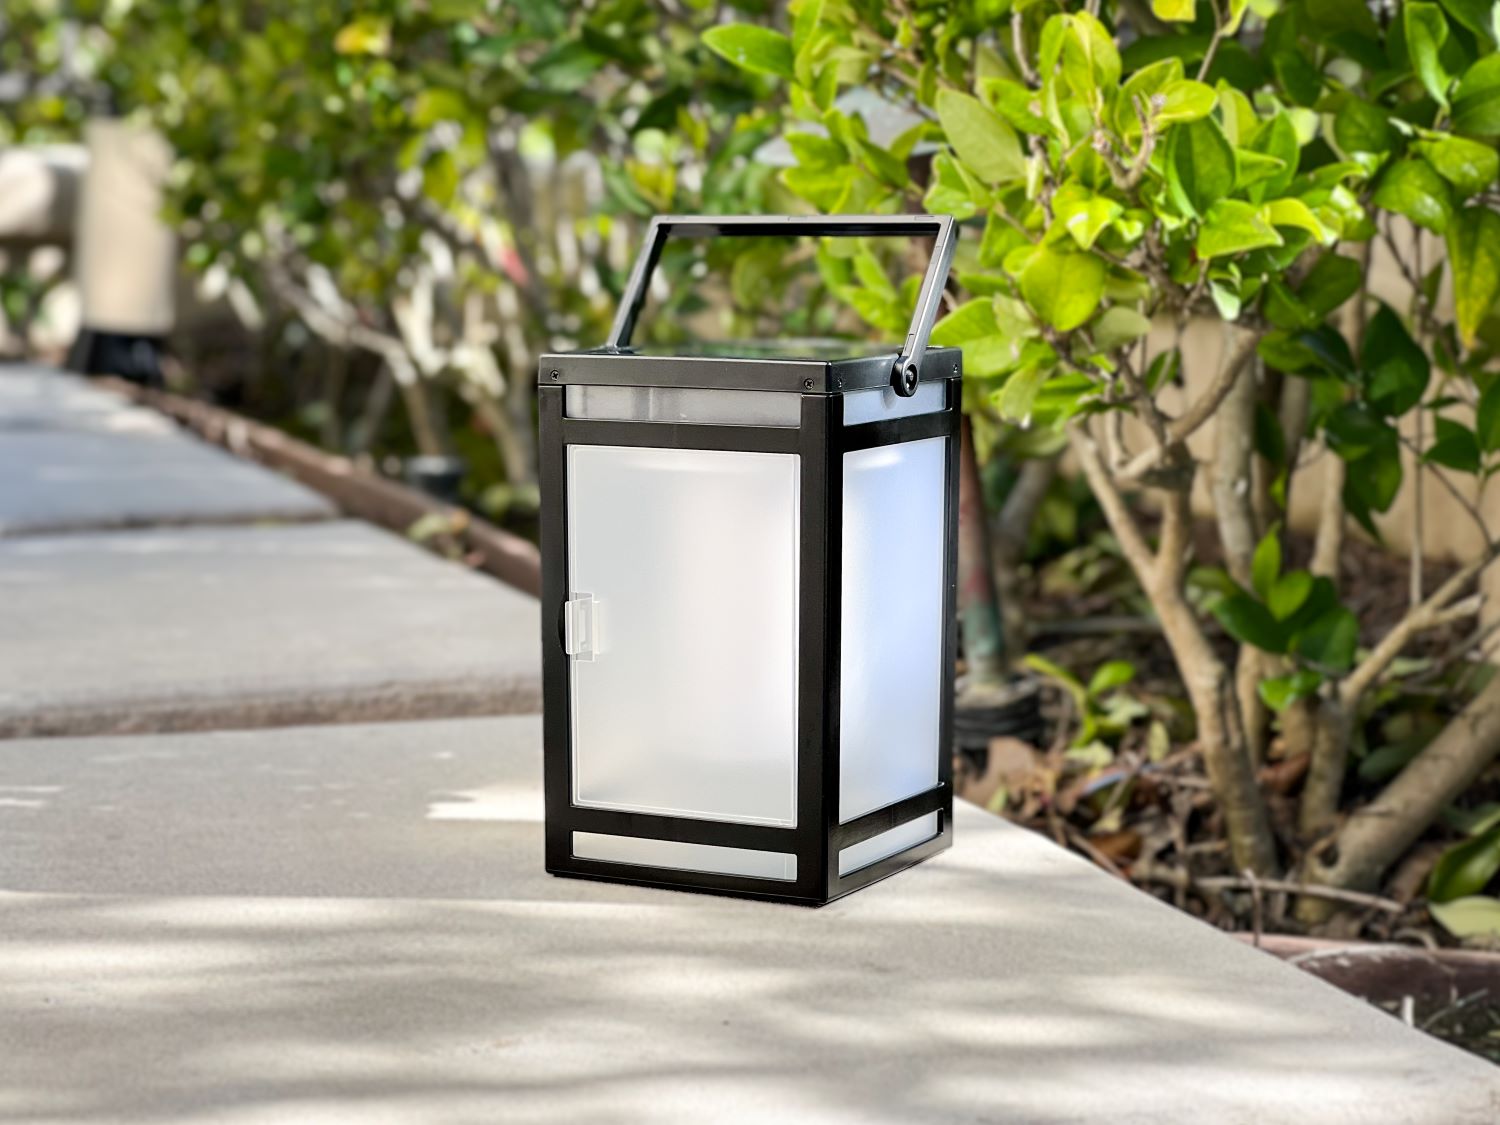 Techko Solar Portable Lantern - Flame or Still Light